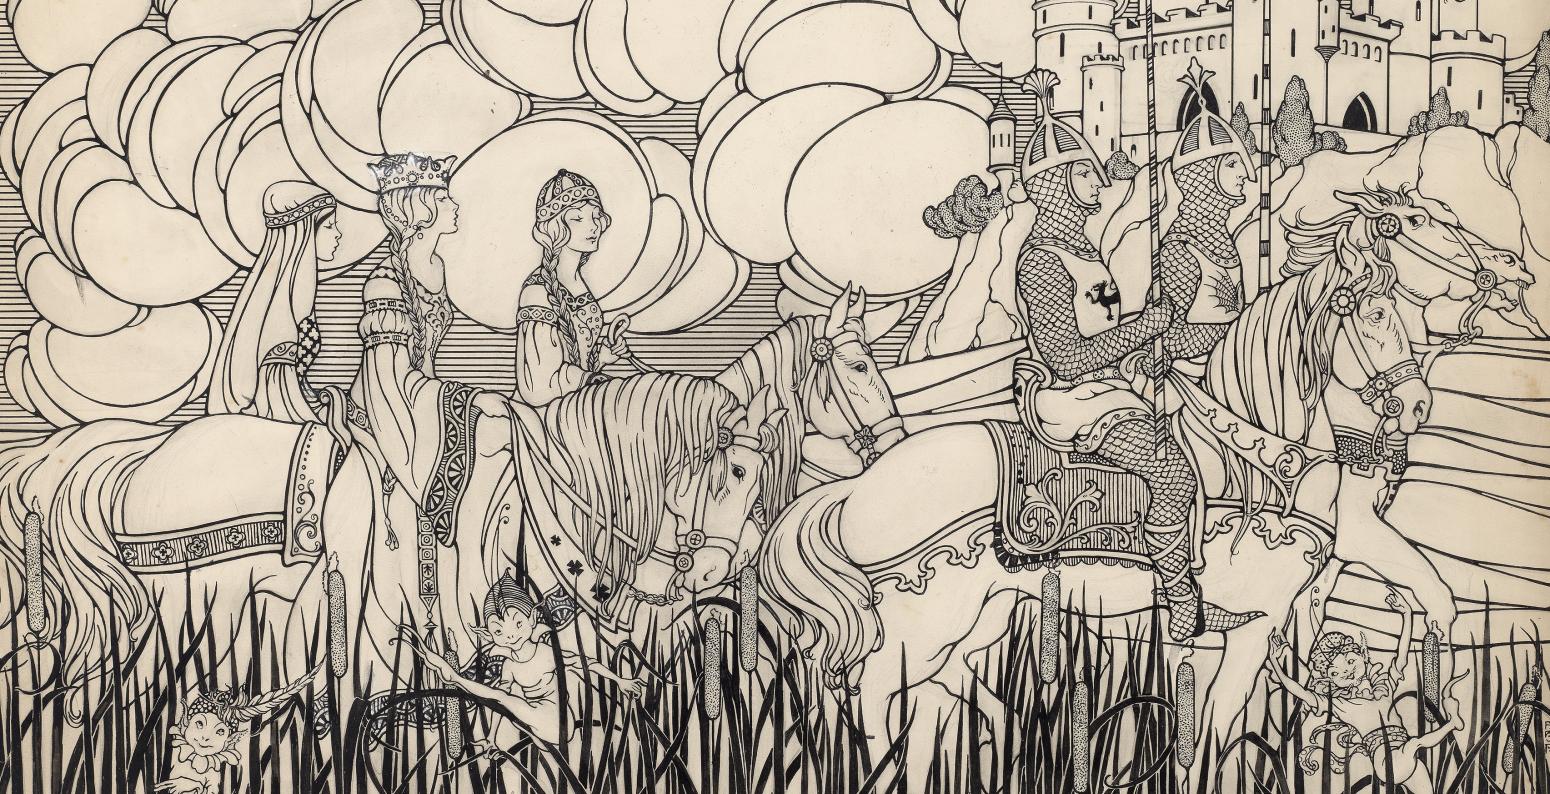 Illustration of knights on horseback.